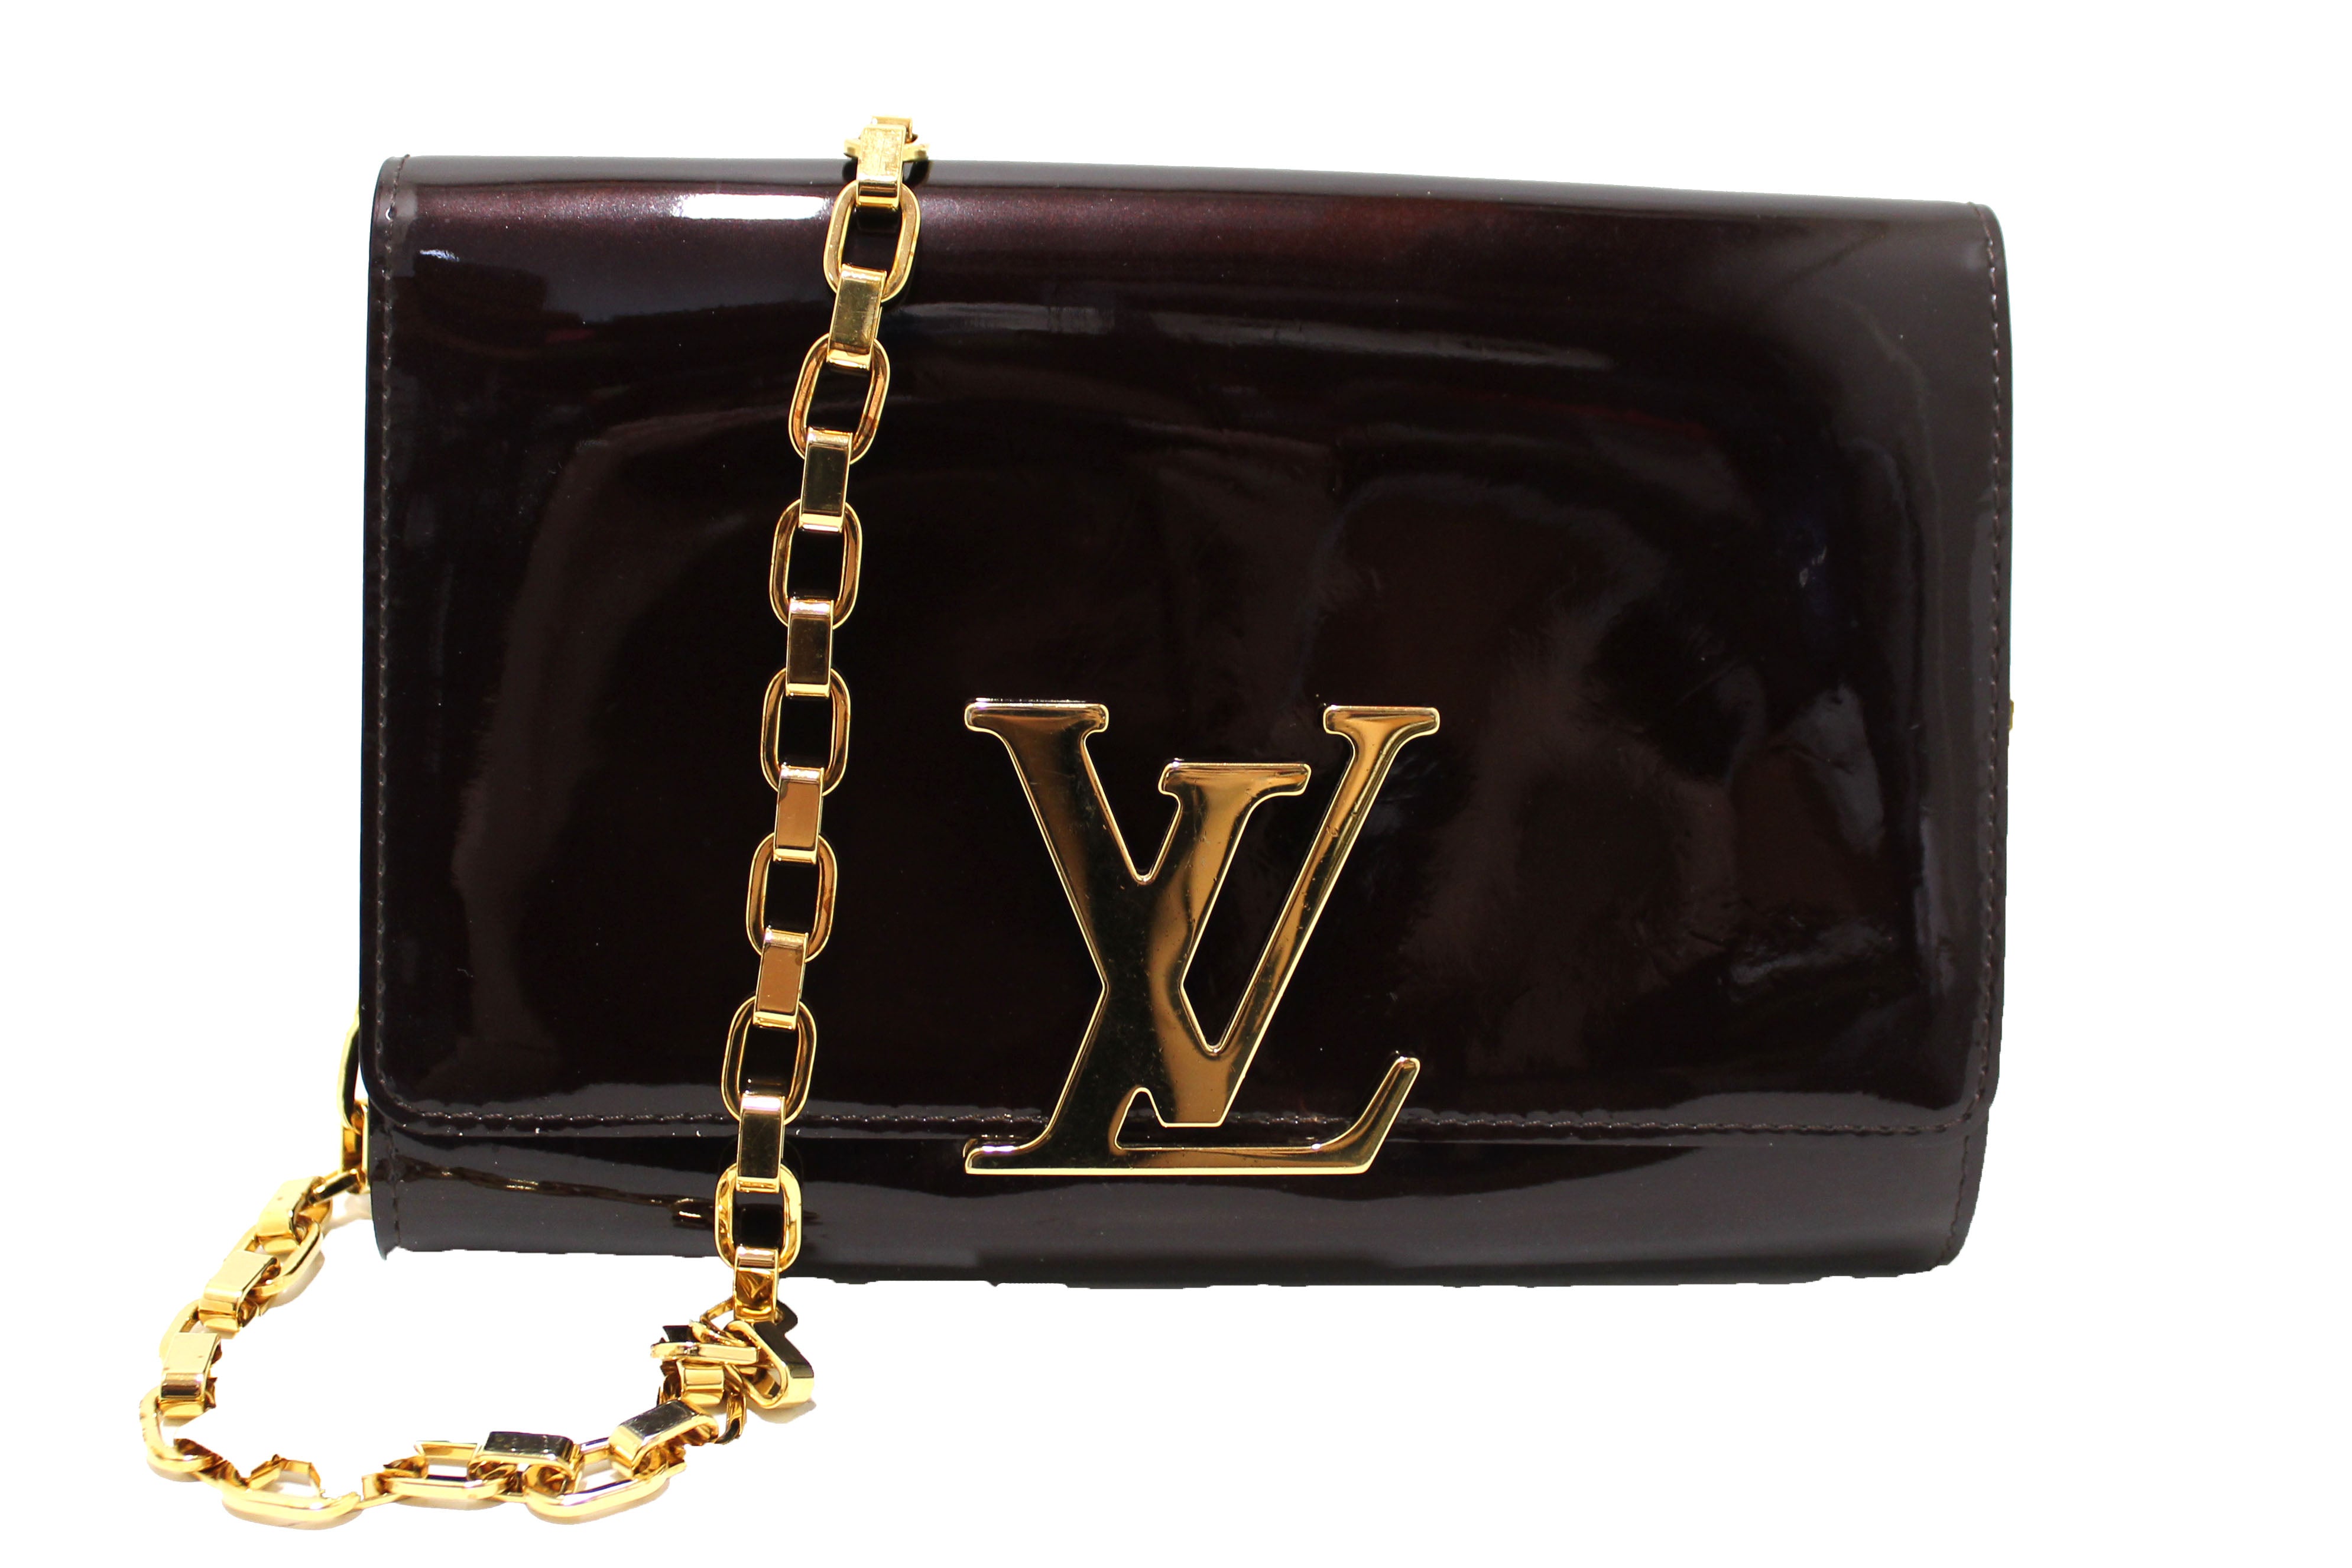 Authentic Louis Vuitton Amarante Vernis Patent Leather Louise